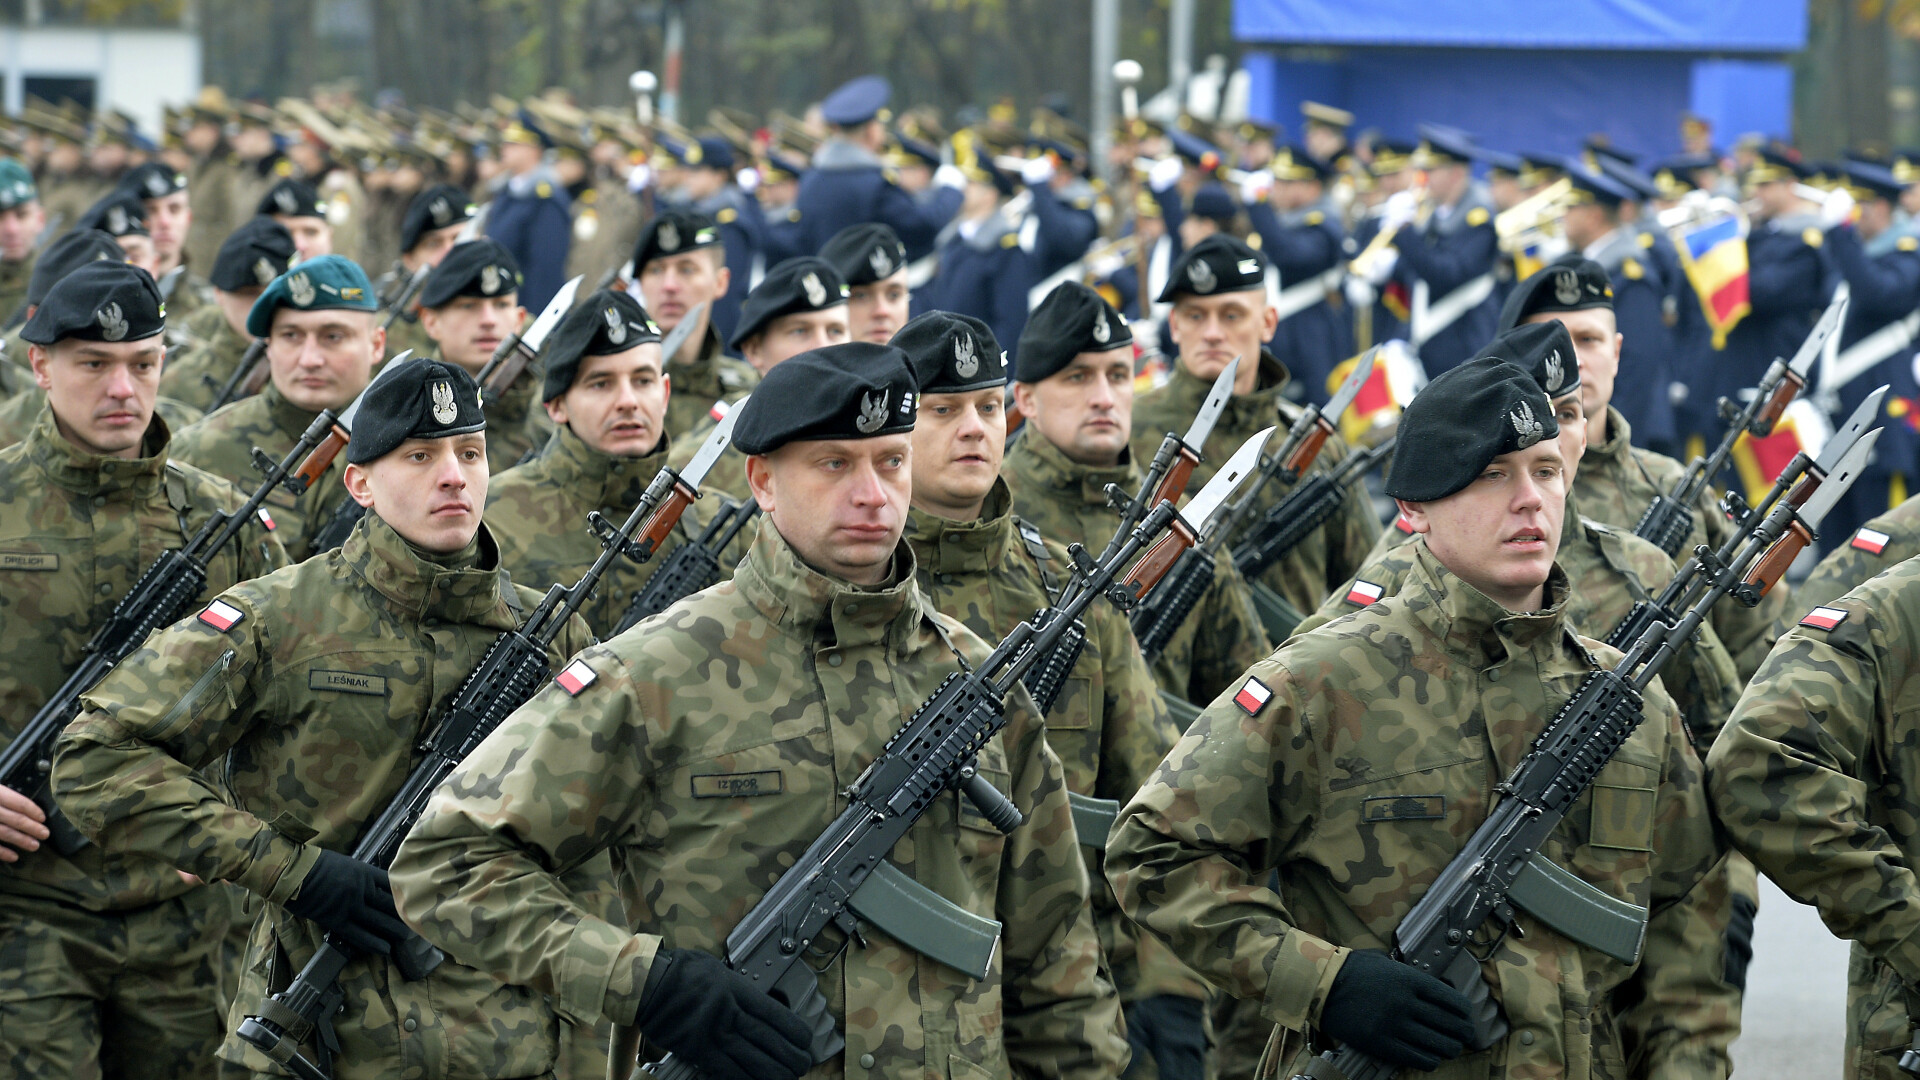 Repetitie pentru parada militara de 1 Decembrie, in zona Arcului de Triumf din Bucuresti